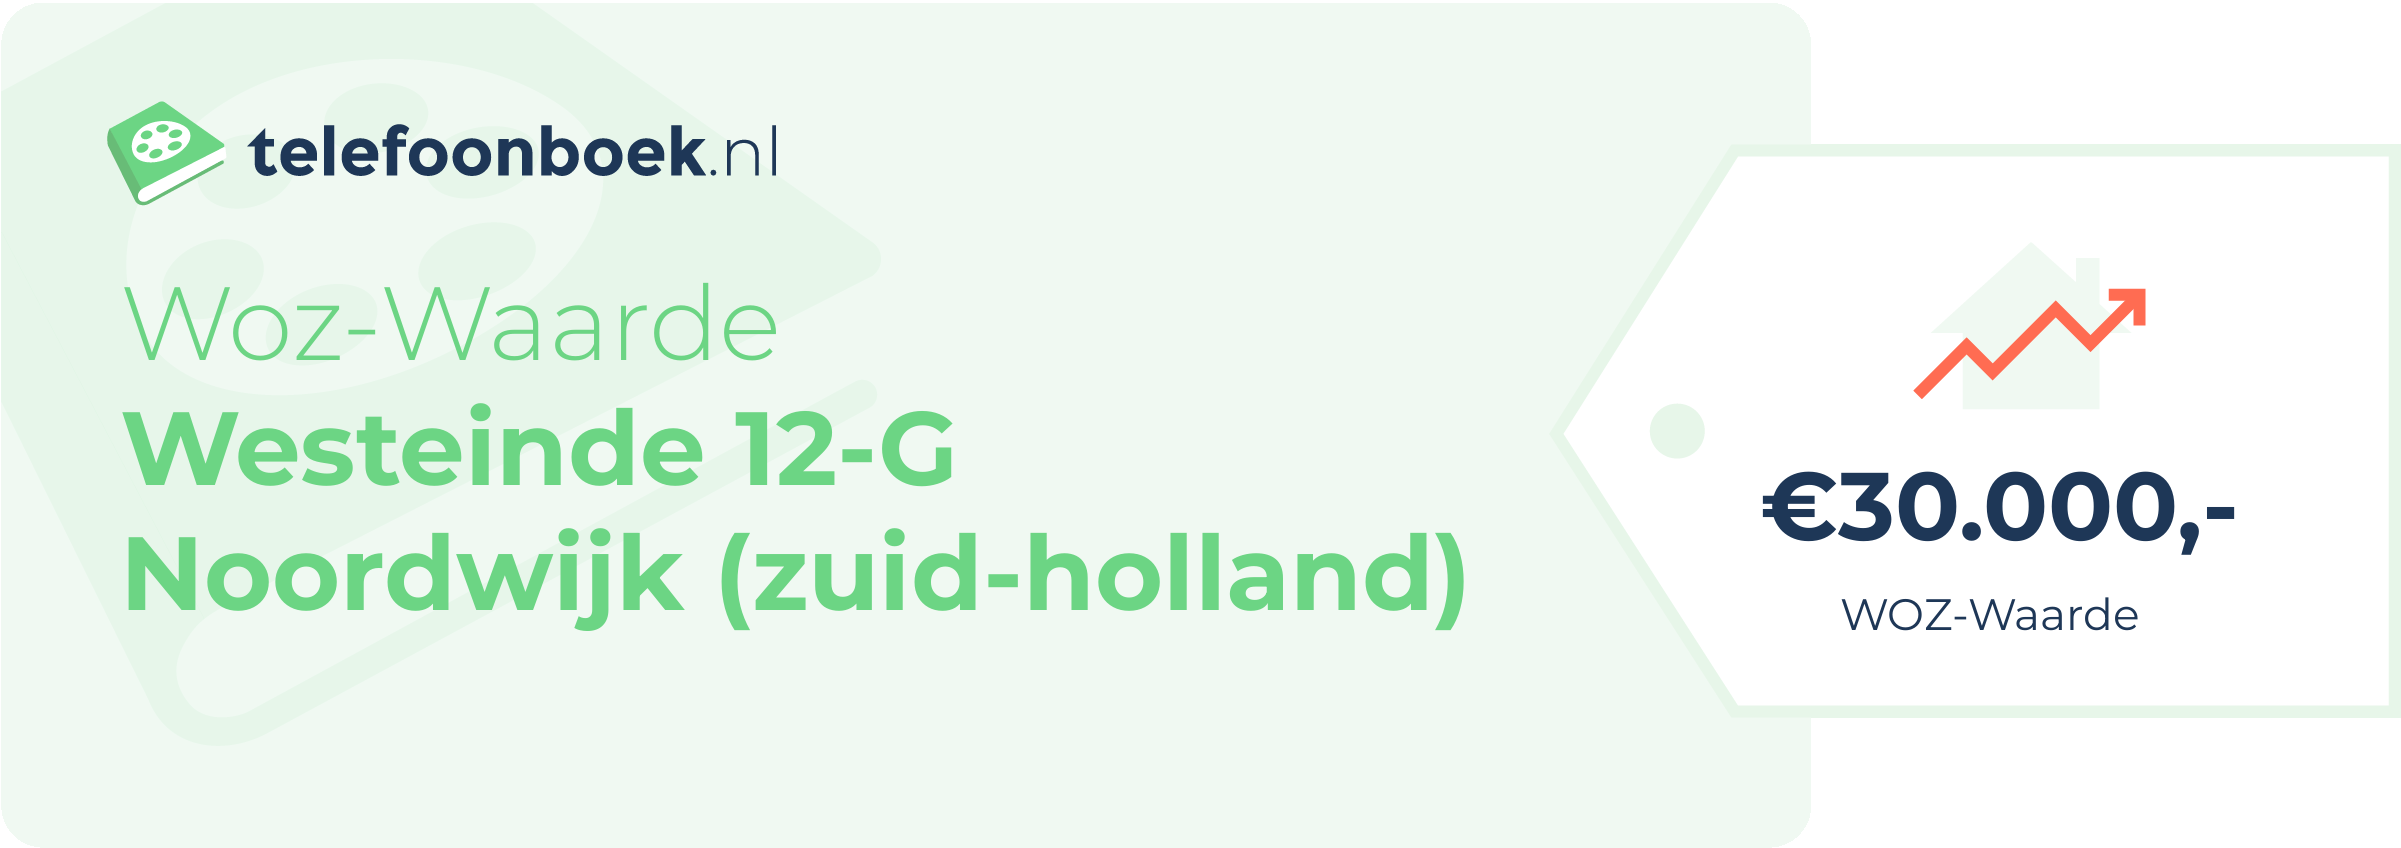 WOZ-waarde Westeinde 12-G Noordwijk (Zuid-Holland)